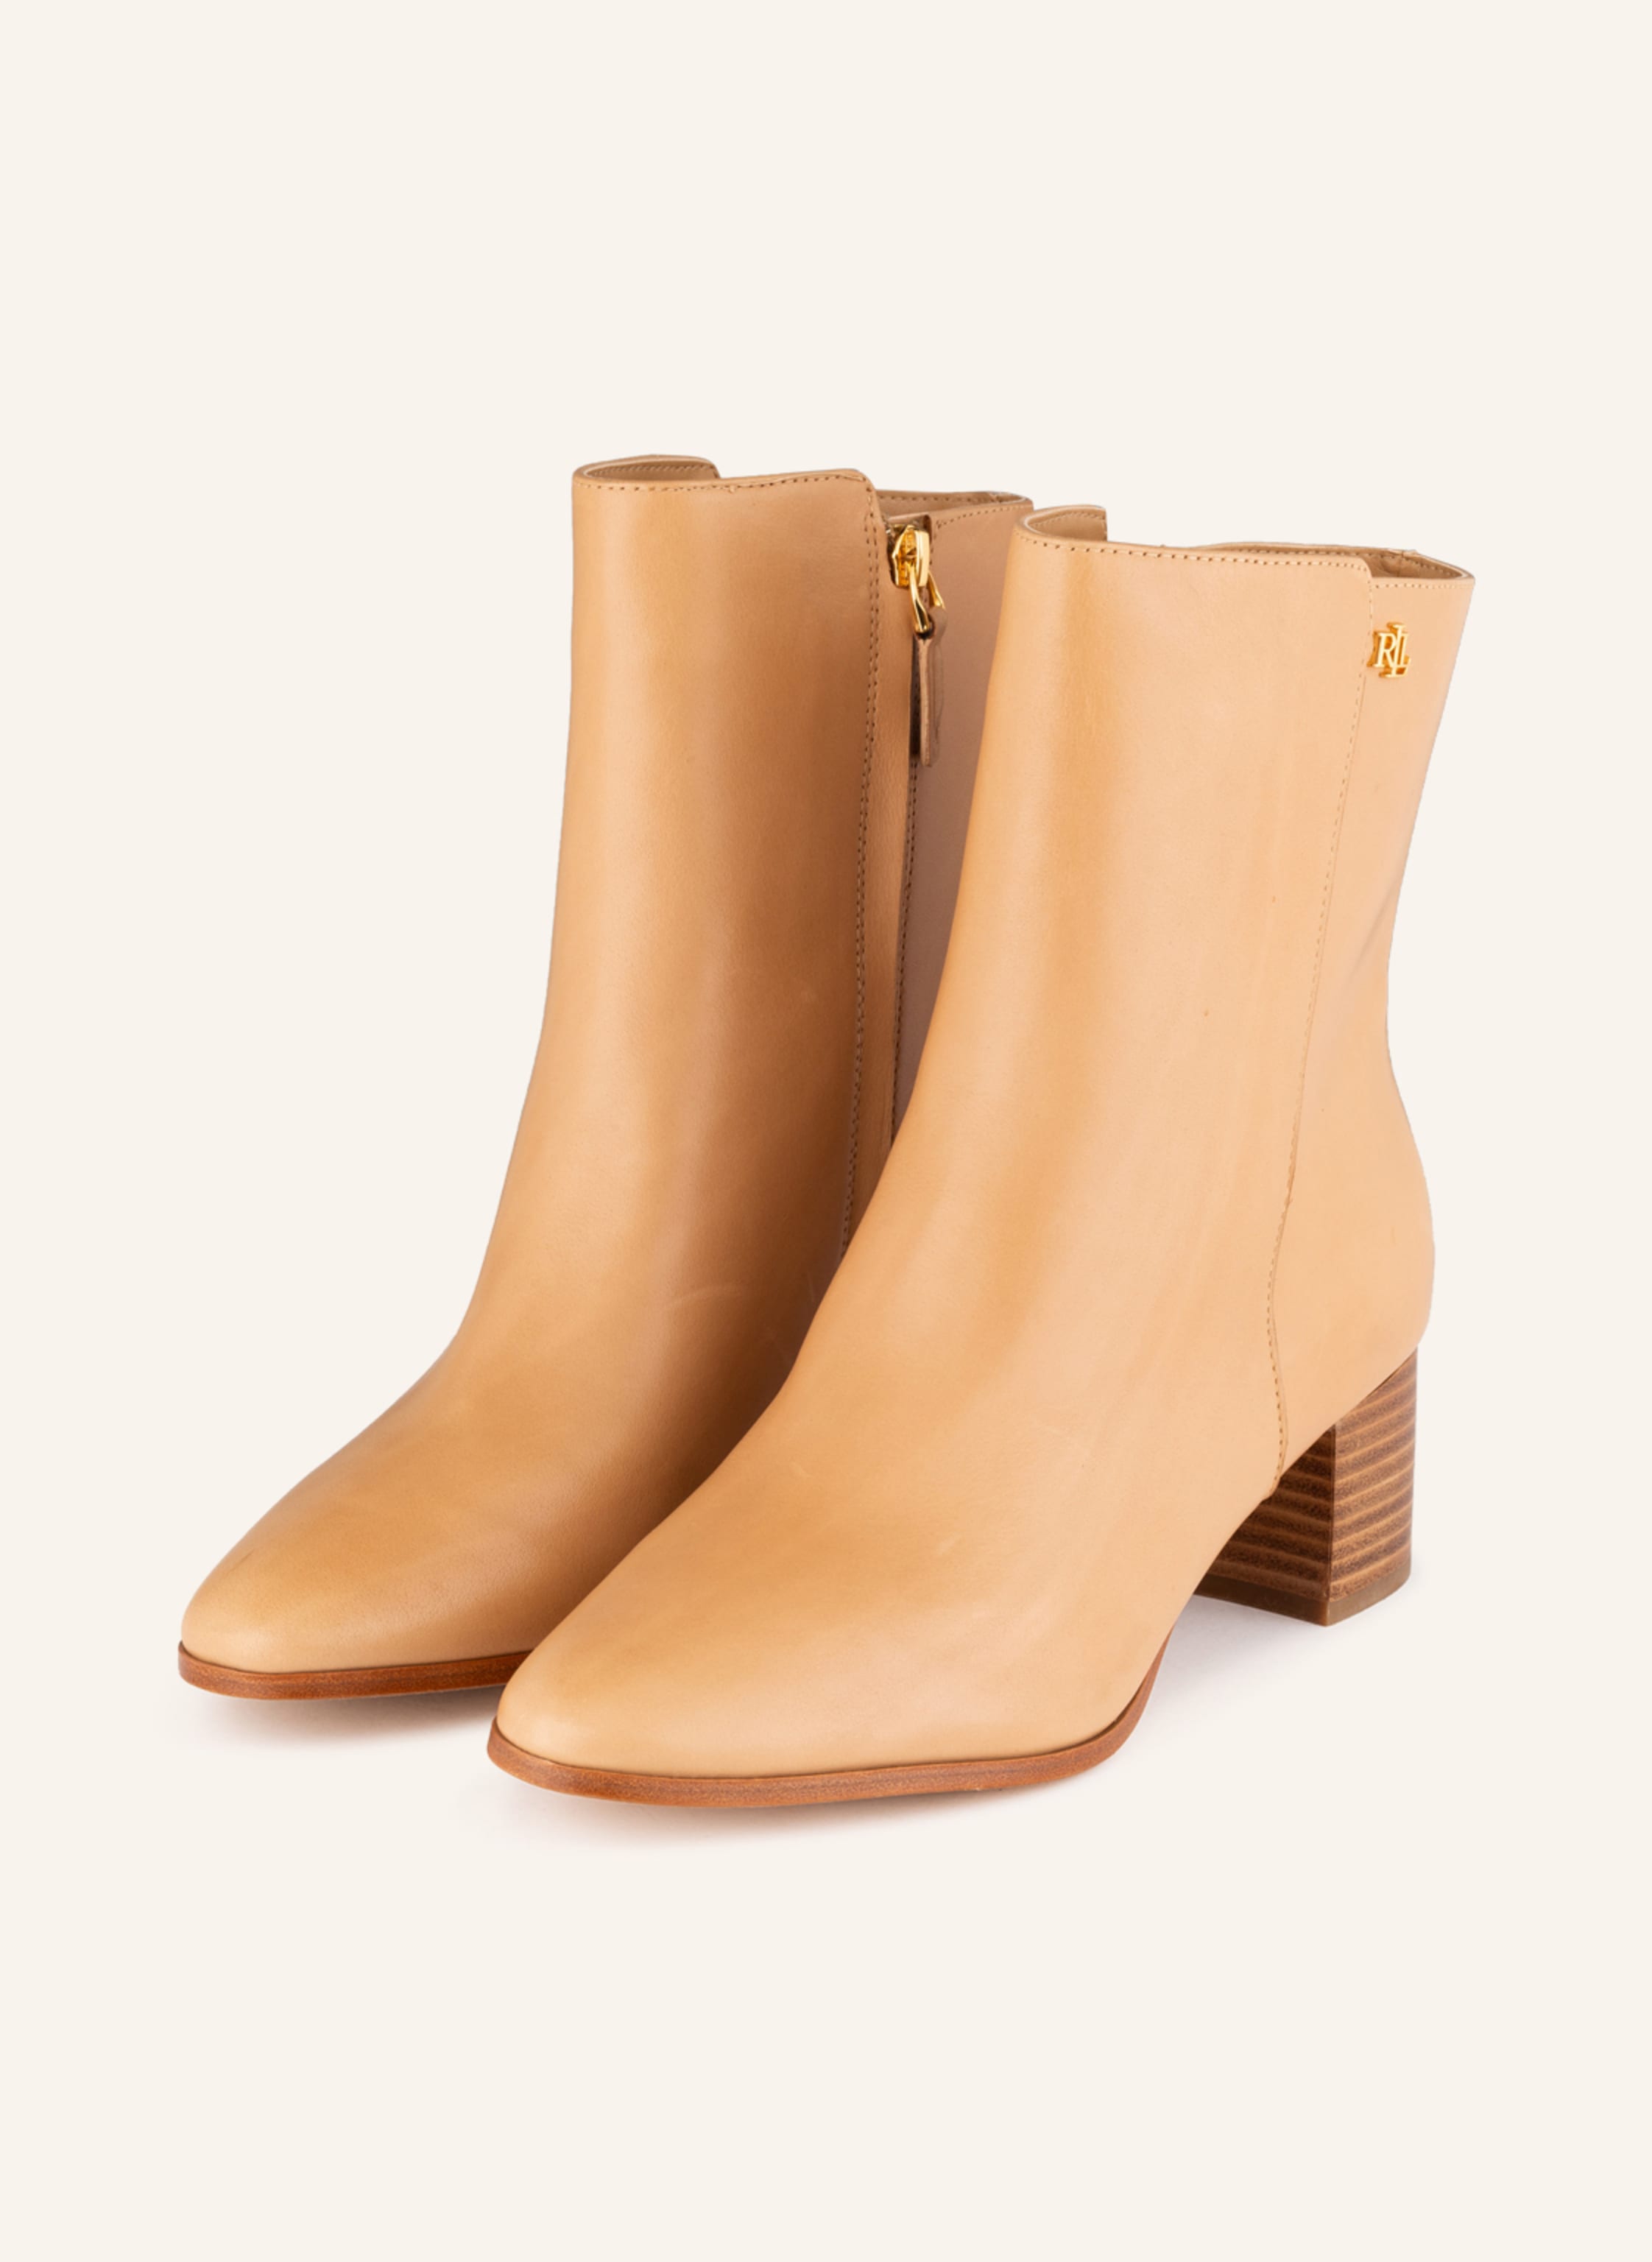 LAUREN RALPH LAUREN Ankle boots in light brown | Breuninger